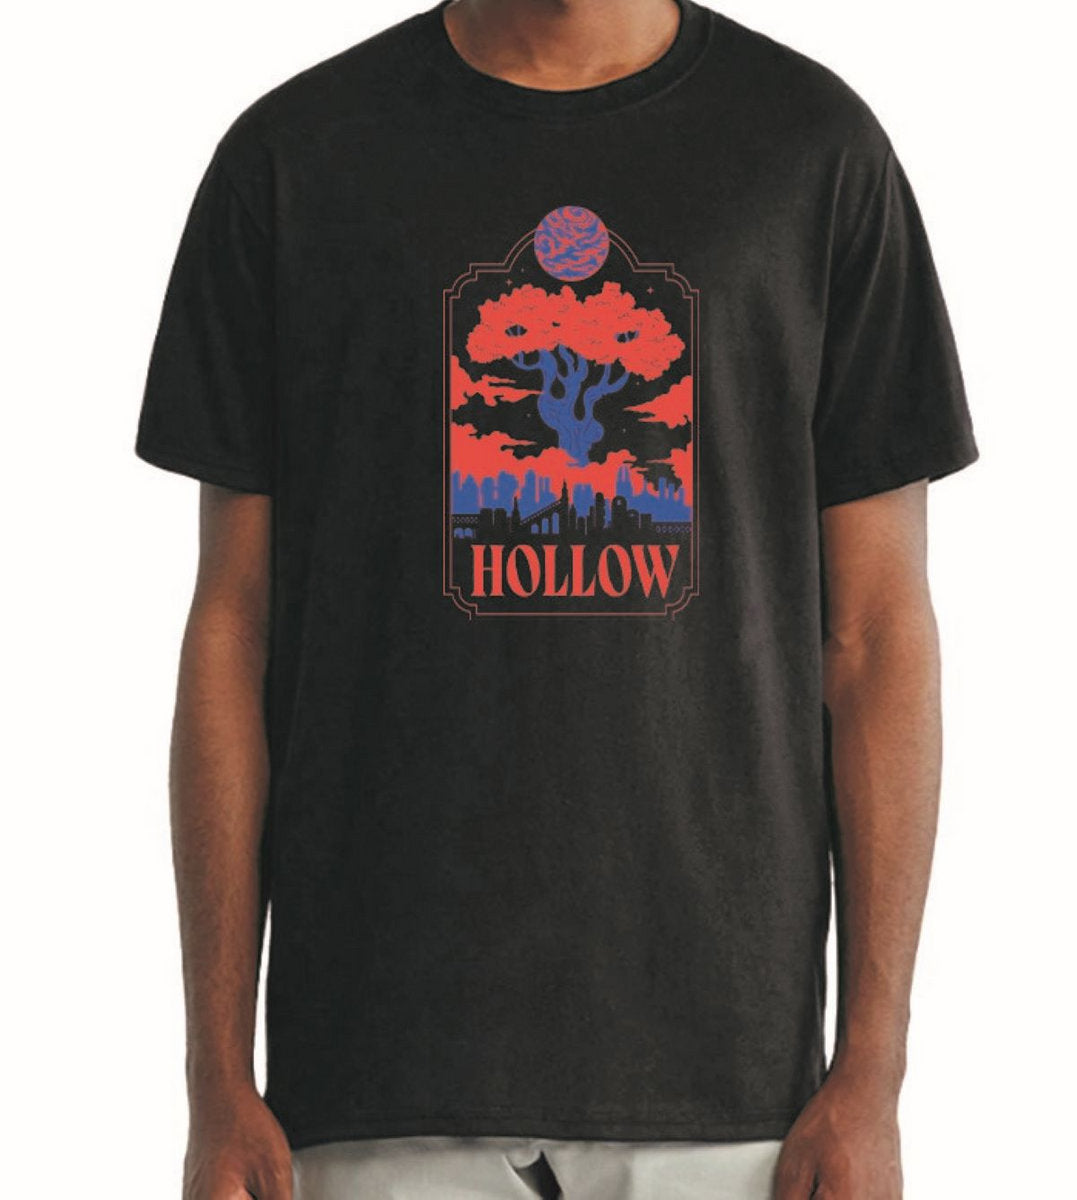 Hollow t-shirt